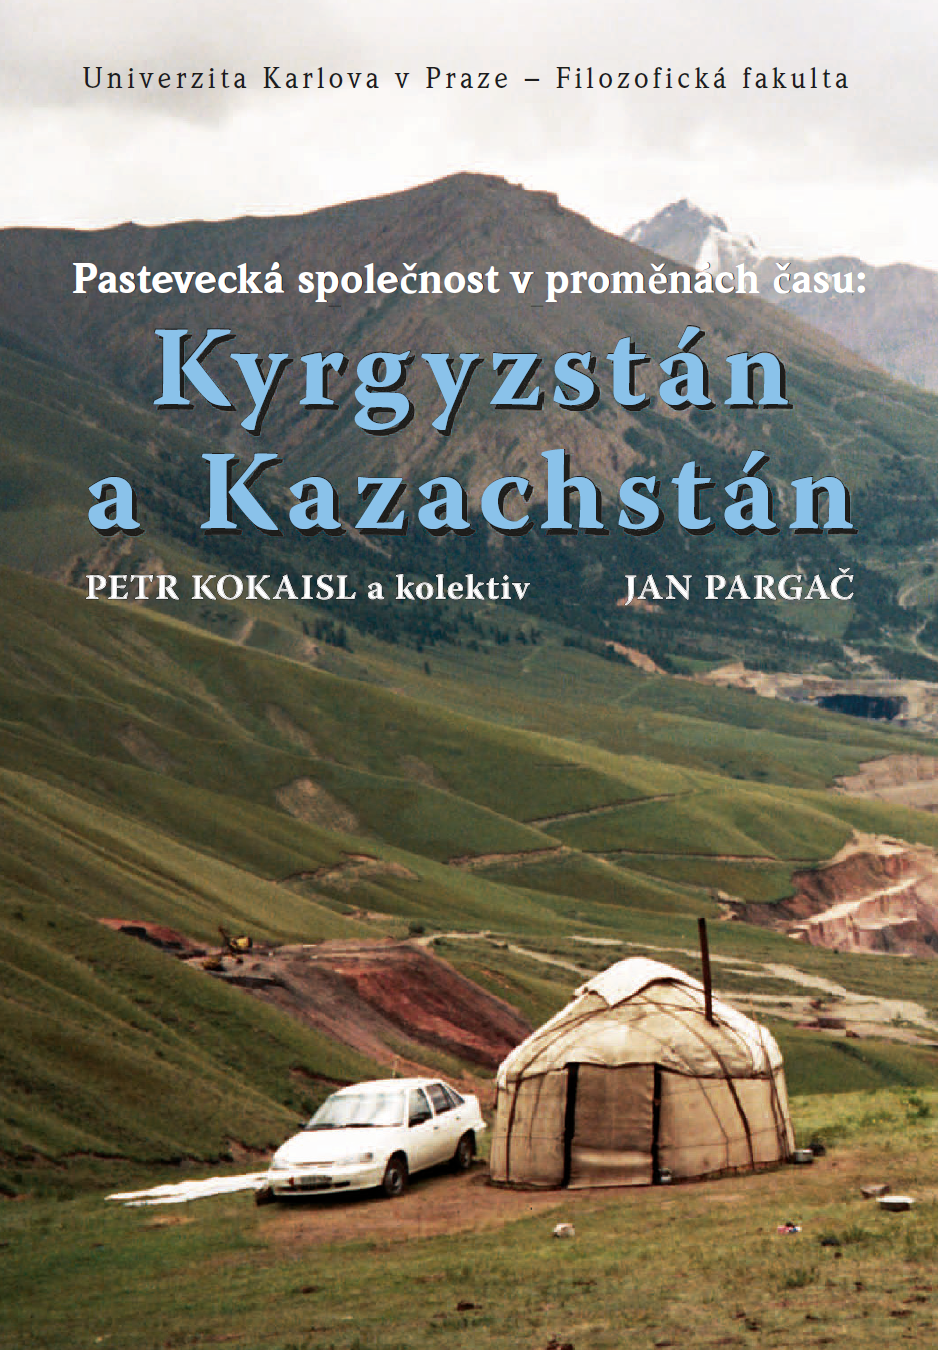 Pastevecká společnost v proměnách času: Kyrgyzstán a Kazachstán